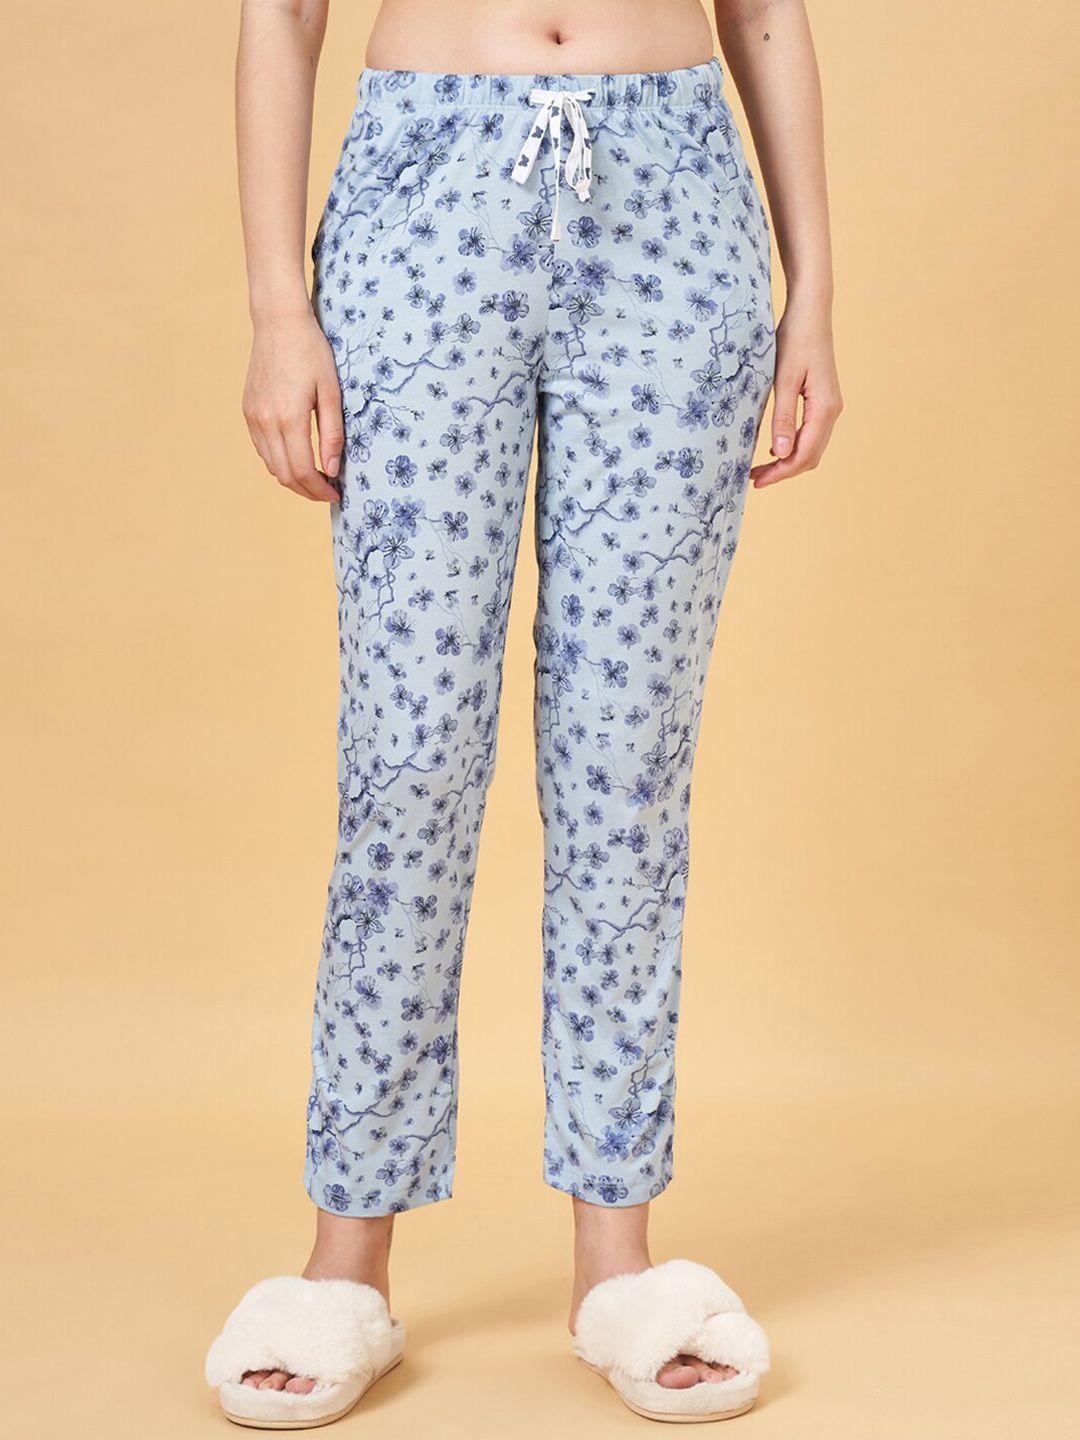 dreamz by pantaloons women floral printed cotton lounge pants